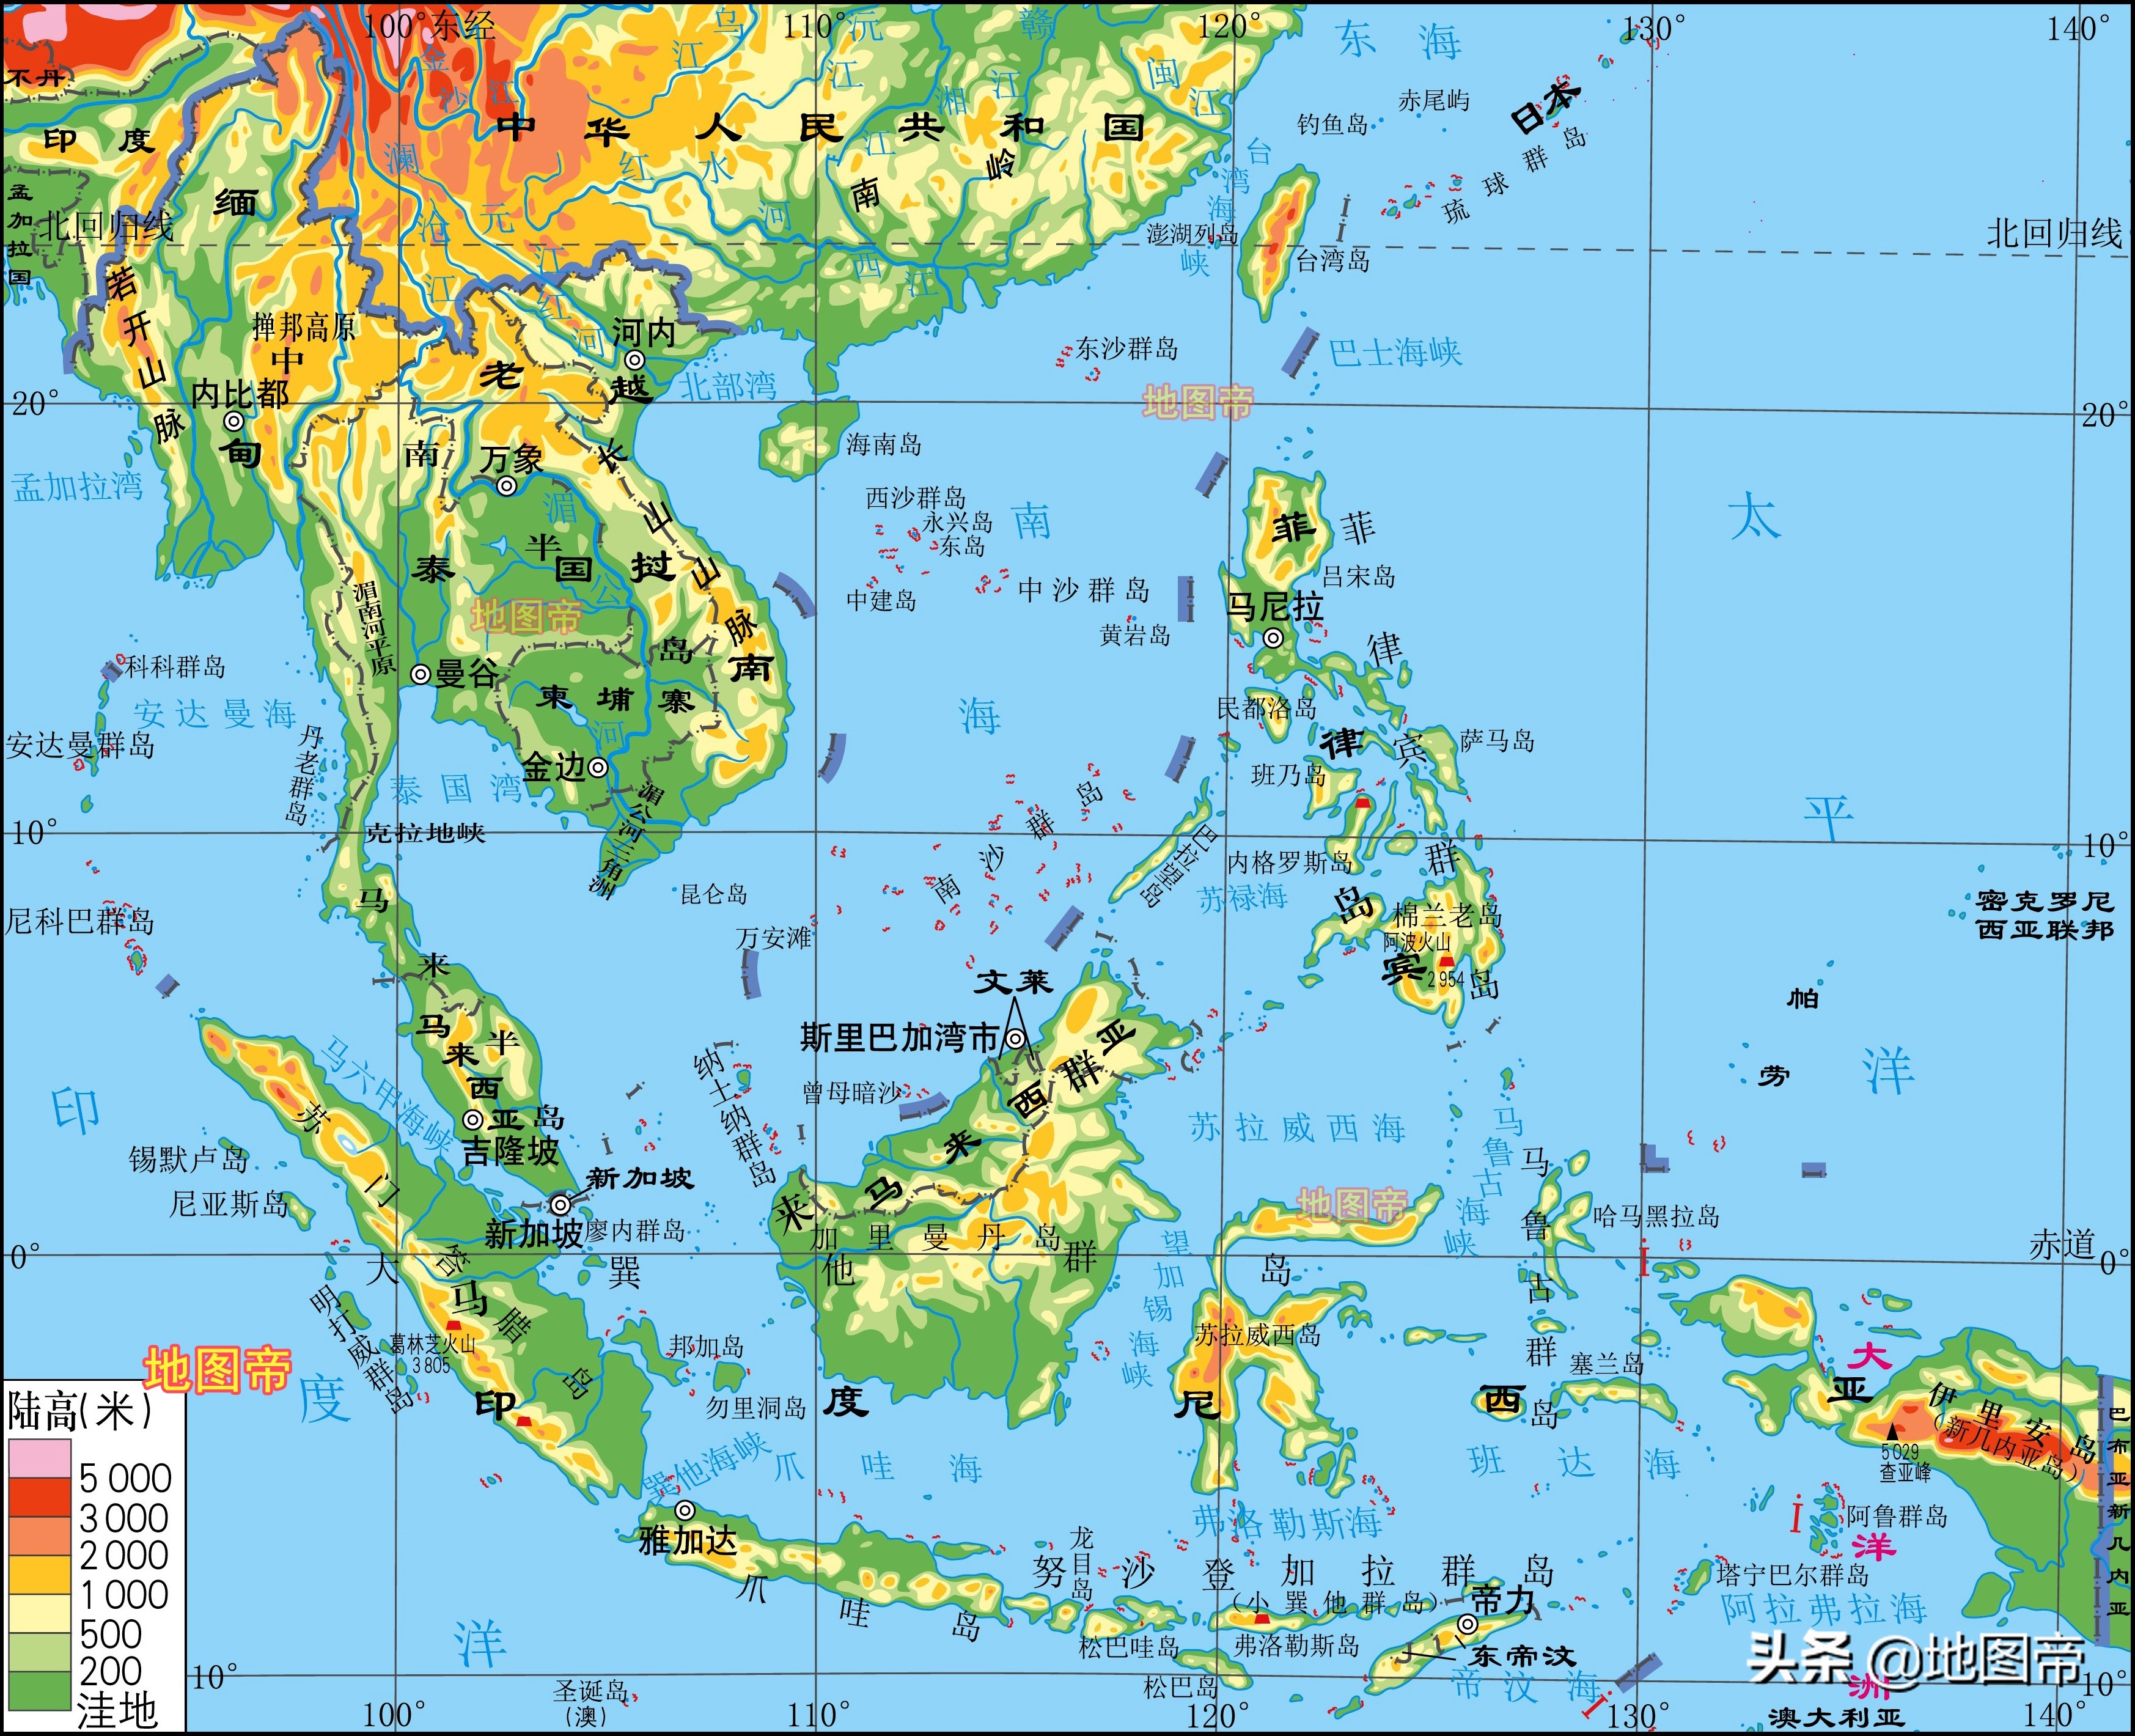 印度尼西亚地图 库存例证. 插画 包括有 世界, 绘图, 雅加达, 地理, 印度尼西亚, 共和国, 国家（地区） - 191662978